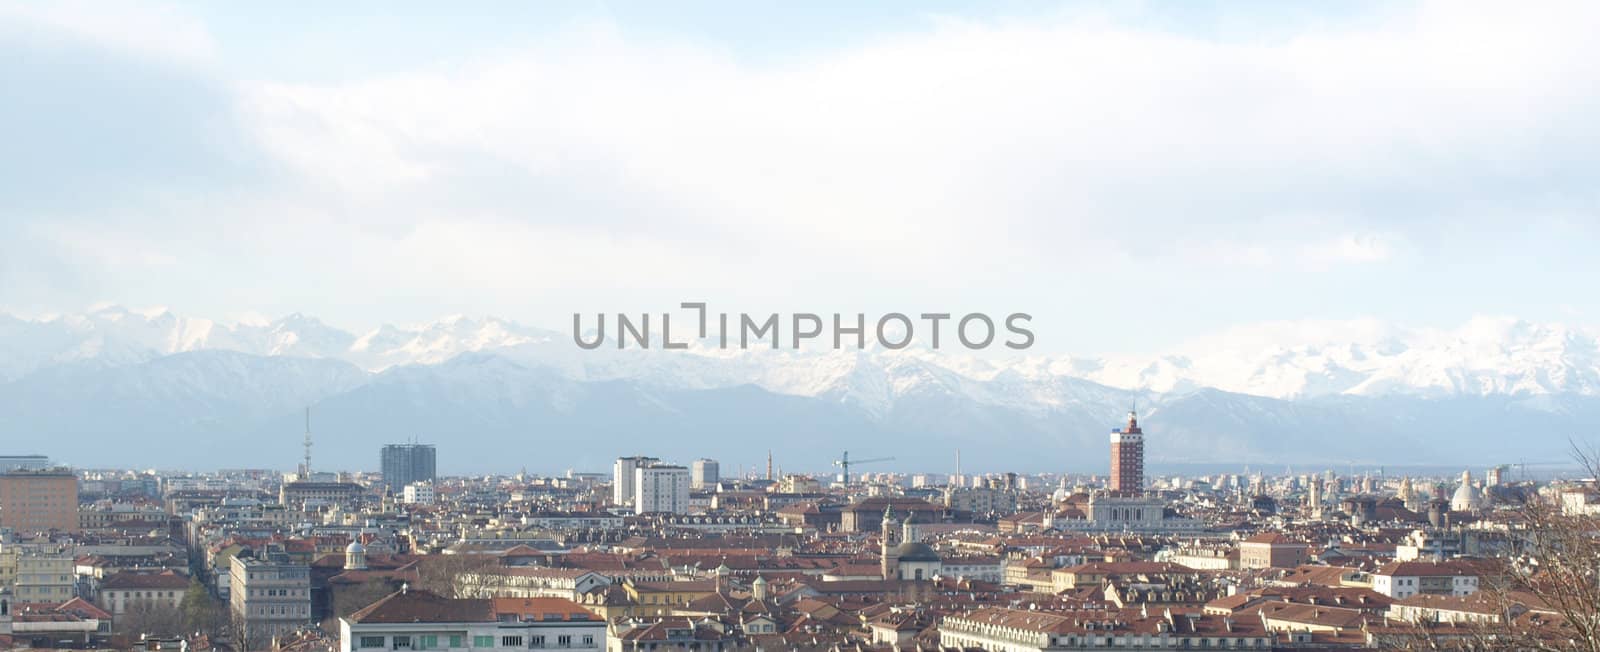 Turin, Italy by claudiodivizia